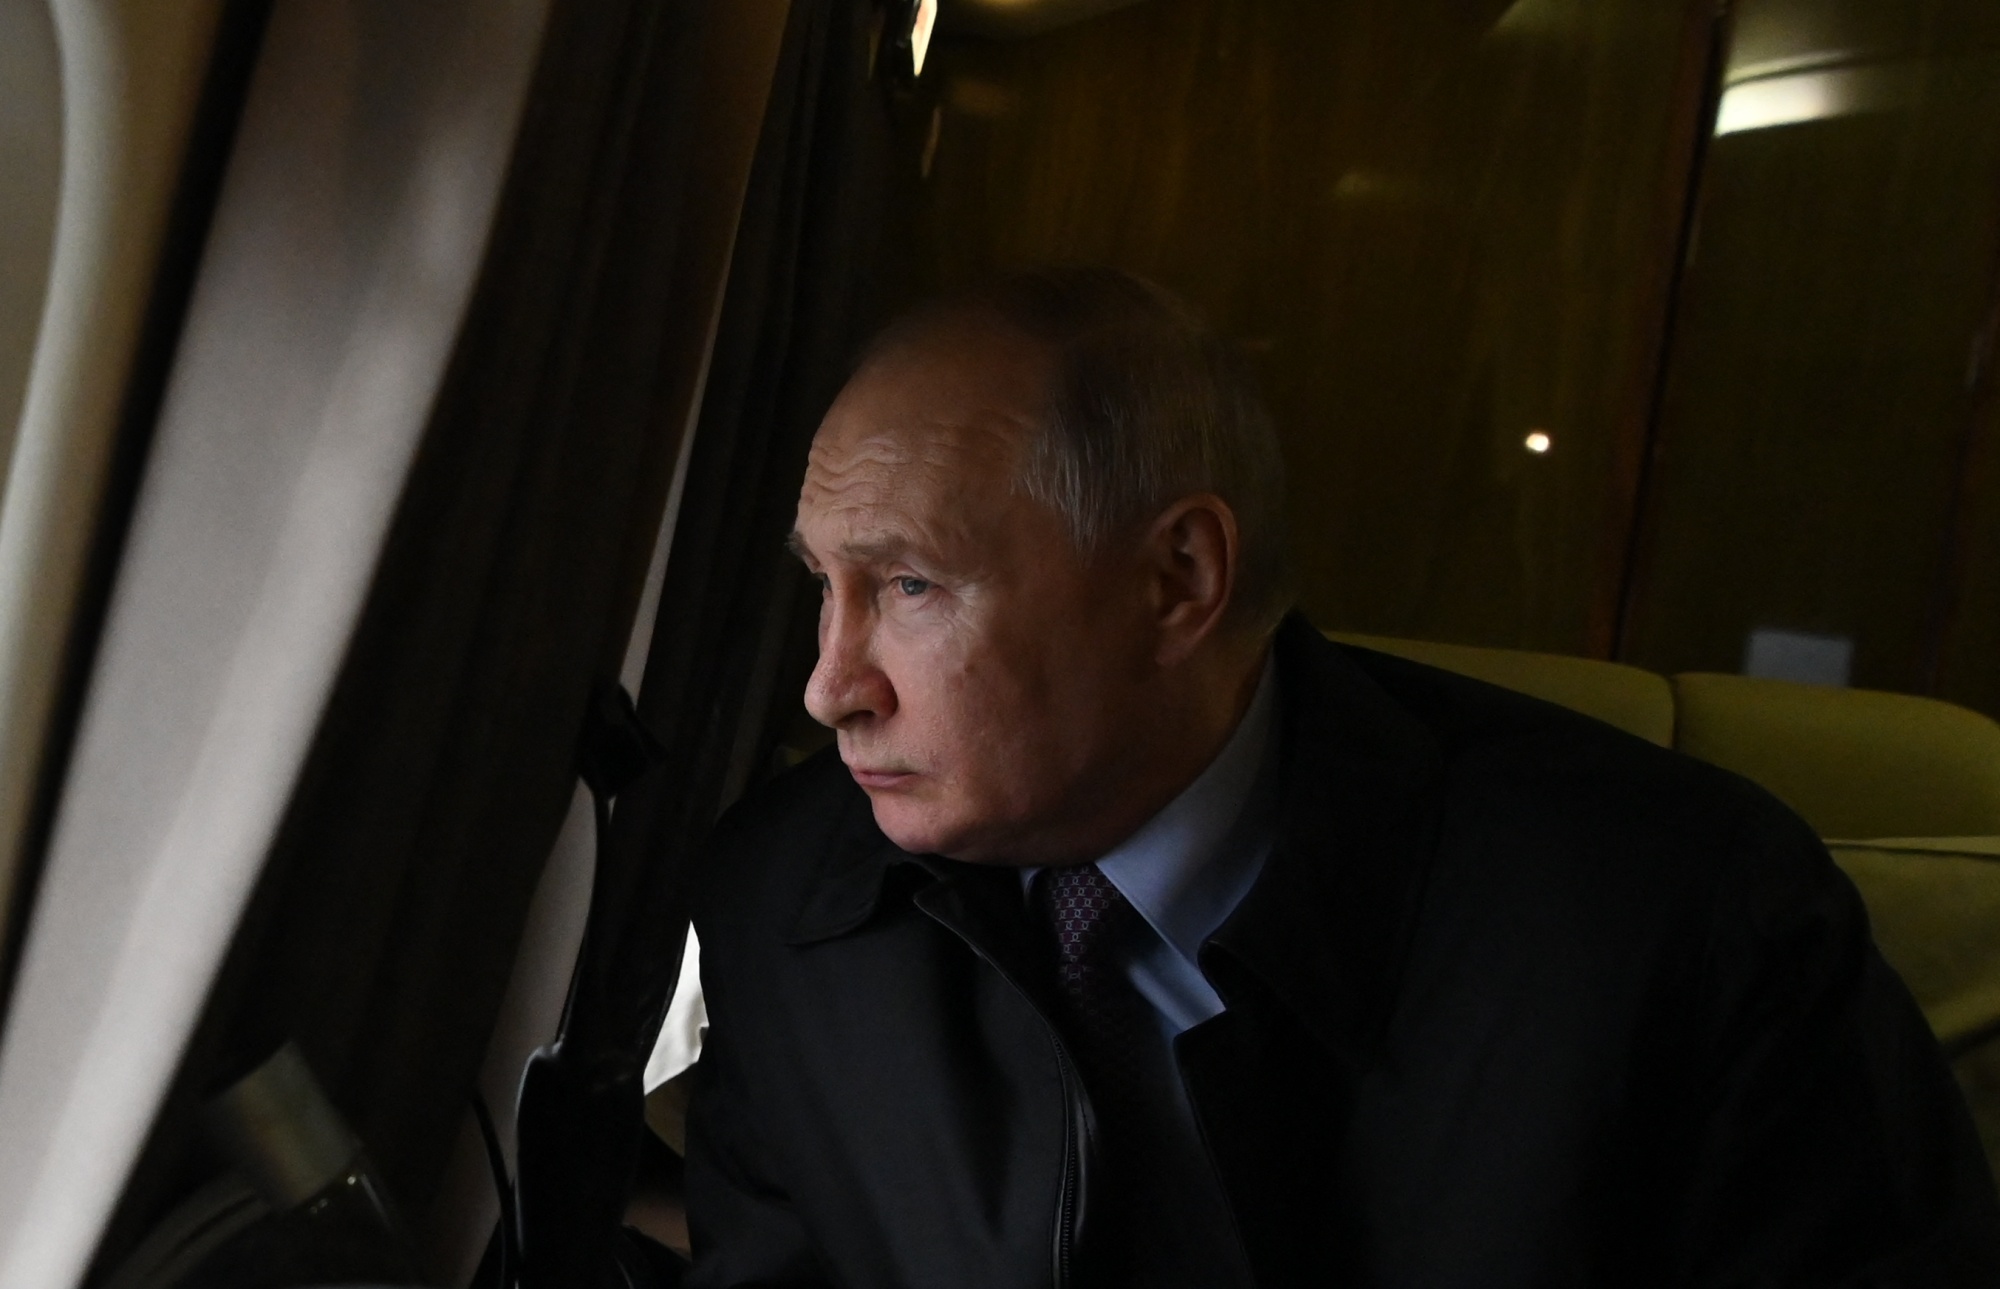 "Putin in arresto cardiaco". Da dove provengono le notizie e cosa c'è di vero